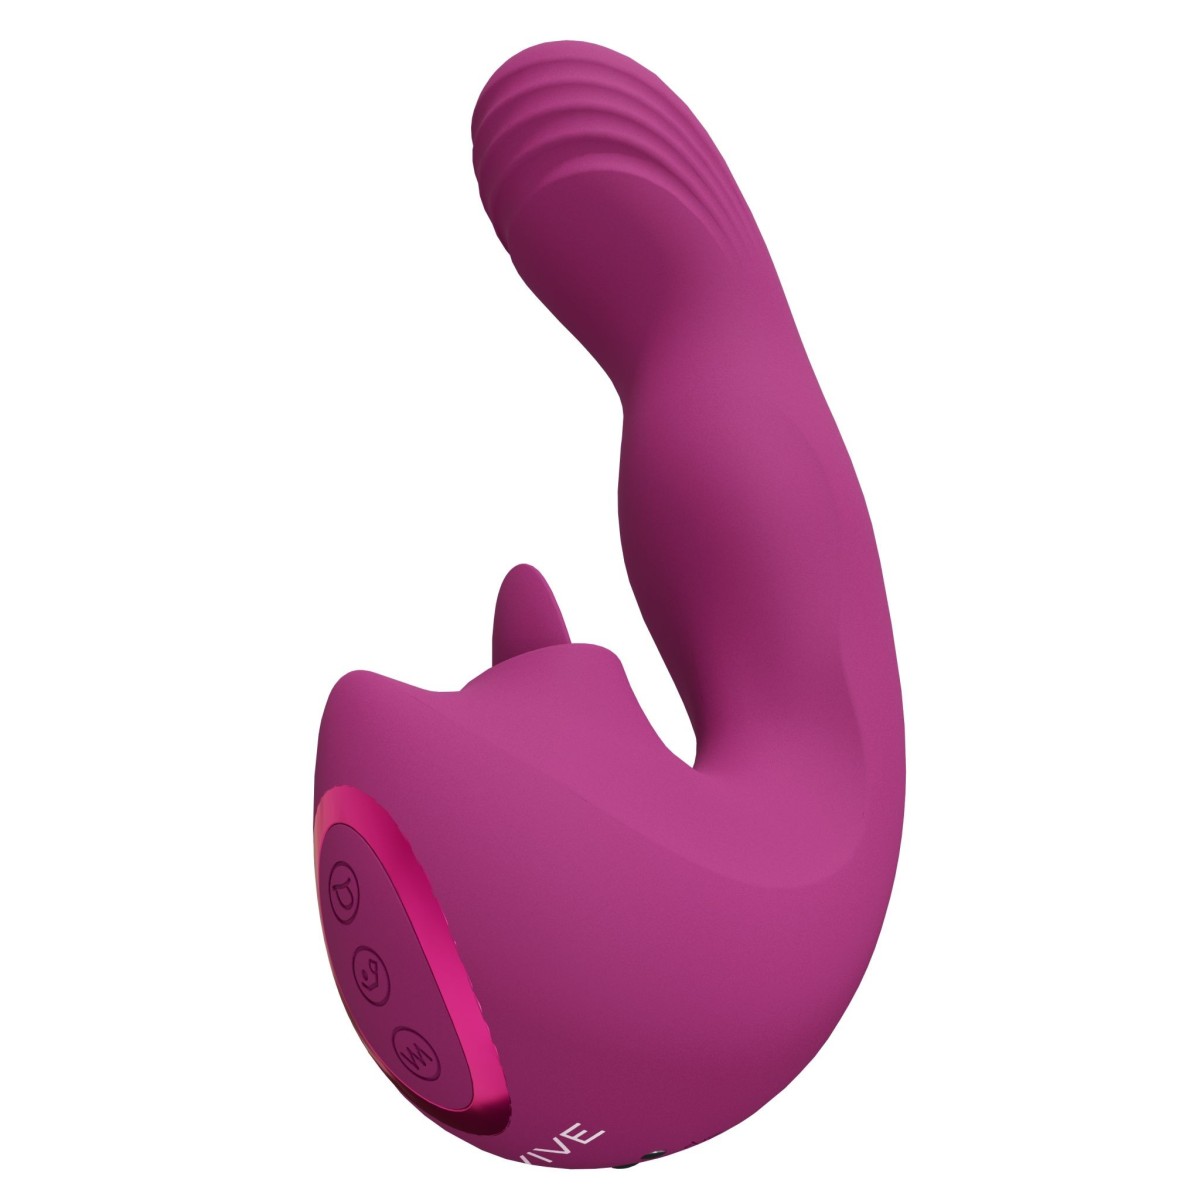 Multifunkční vibrátor Vive Yumi růžový, silikonový vibrátor s pohyblivou hlavou a jazykem 16 x 3,5 cm